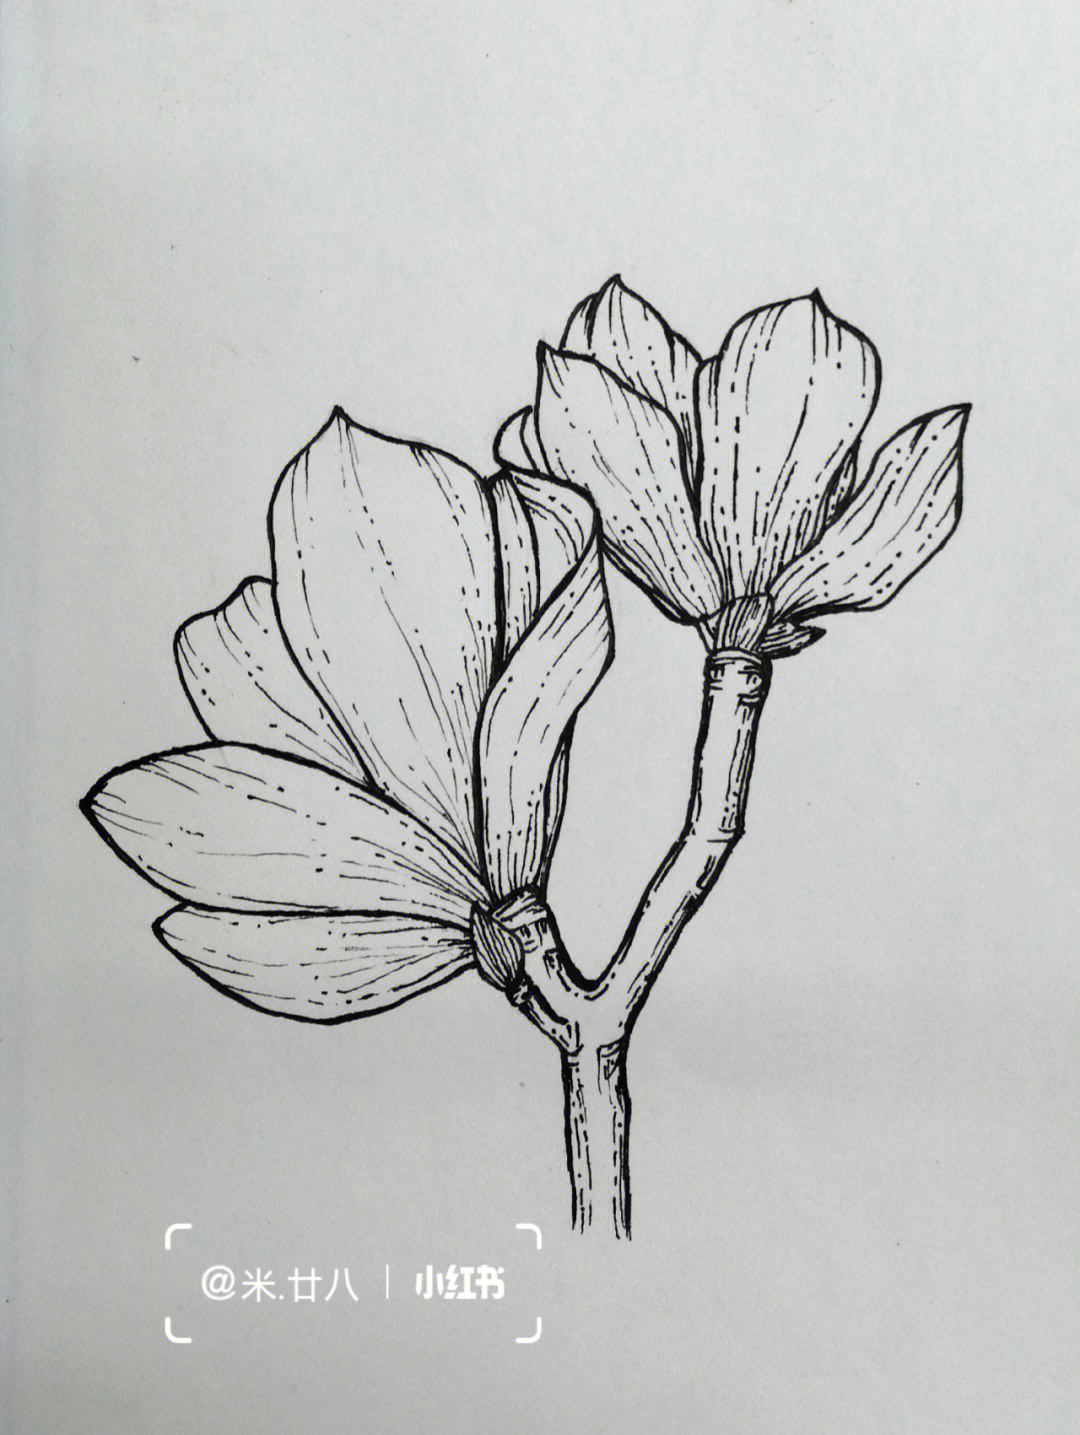 黑白线描练习临摹禅绕画玉兰花叶子手绘练习控笔训练